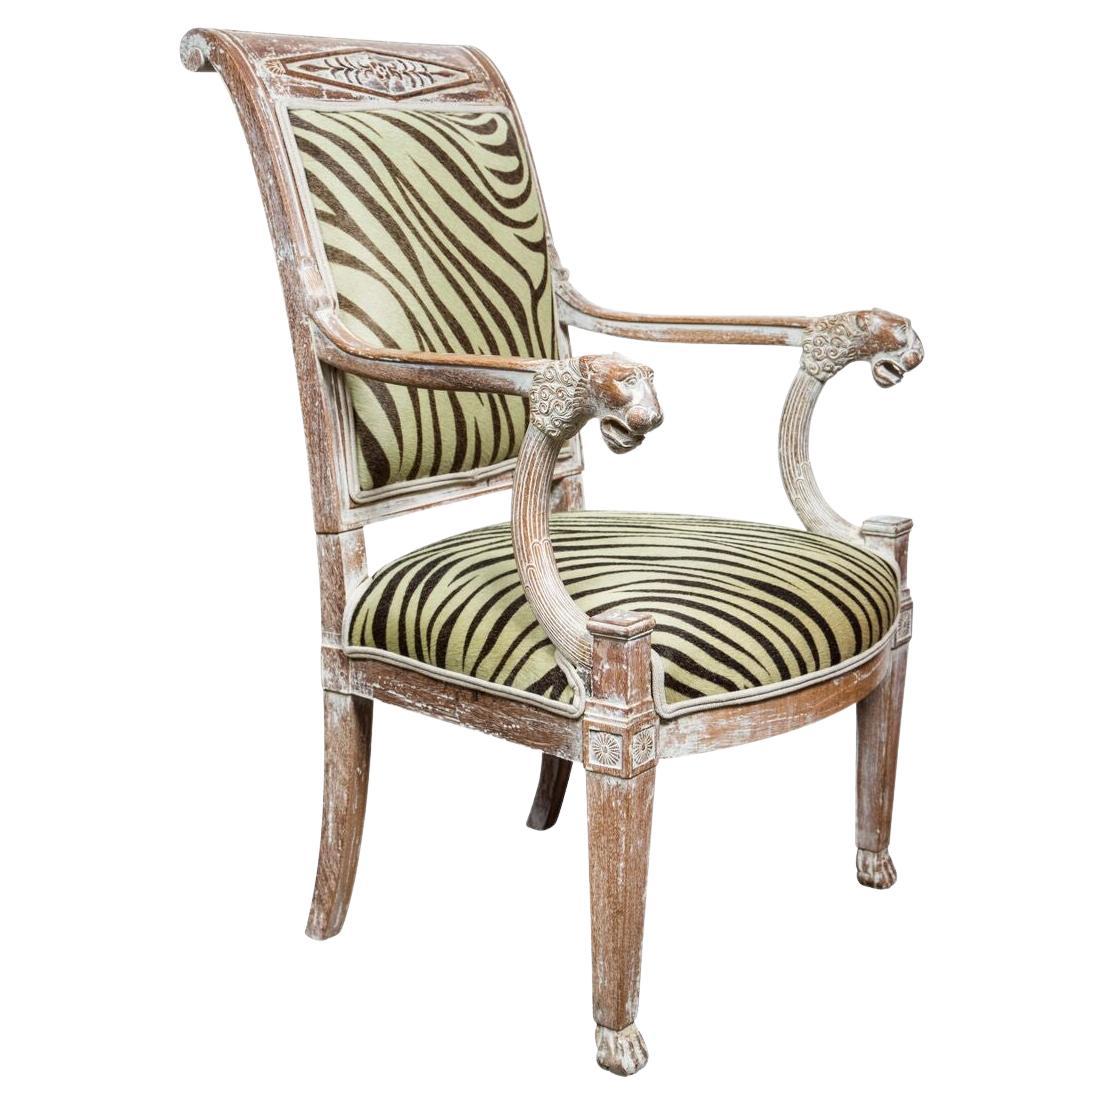 Paire de fauteuils sculptés, finition décapée. La paire de chaises présente des têtes de lion à l'avant des bras, des pieds cannelés et un dossier à volutes. Ils sont nouvellement tapissés en cuir de vachette teintée Edelman. 